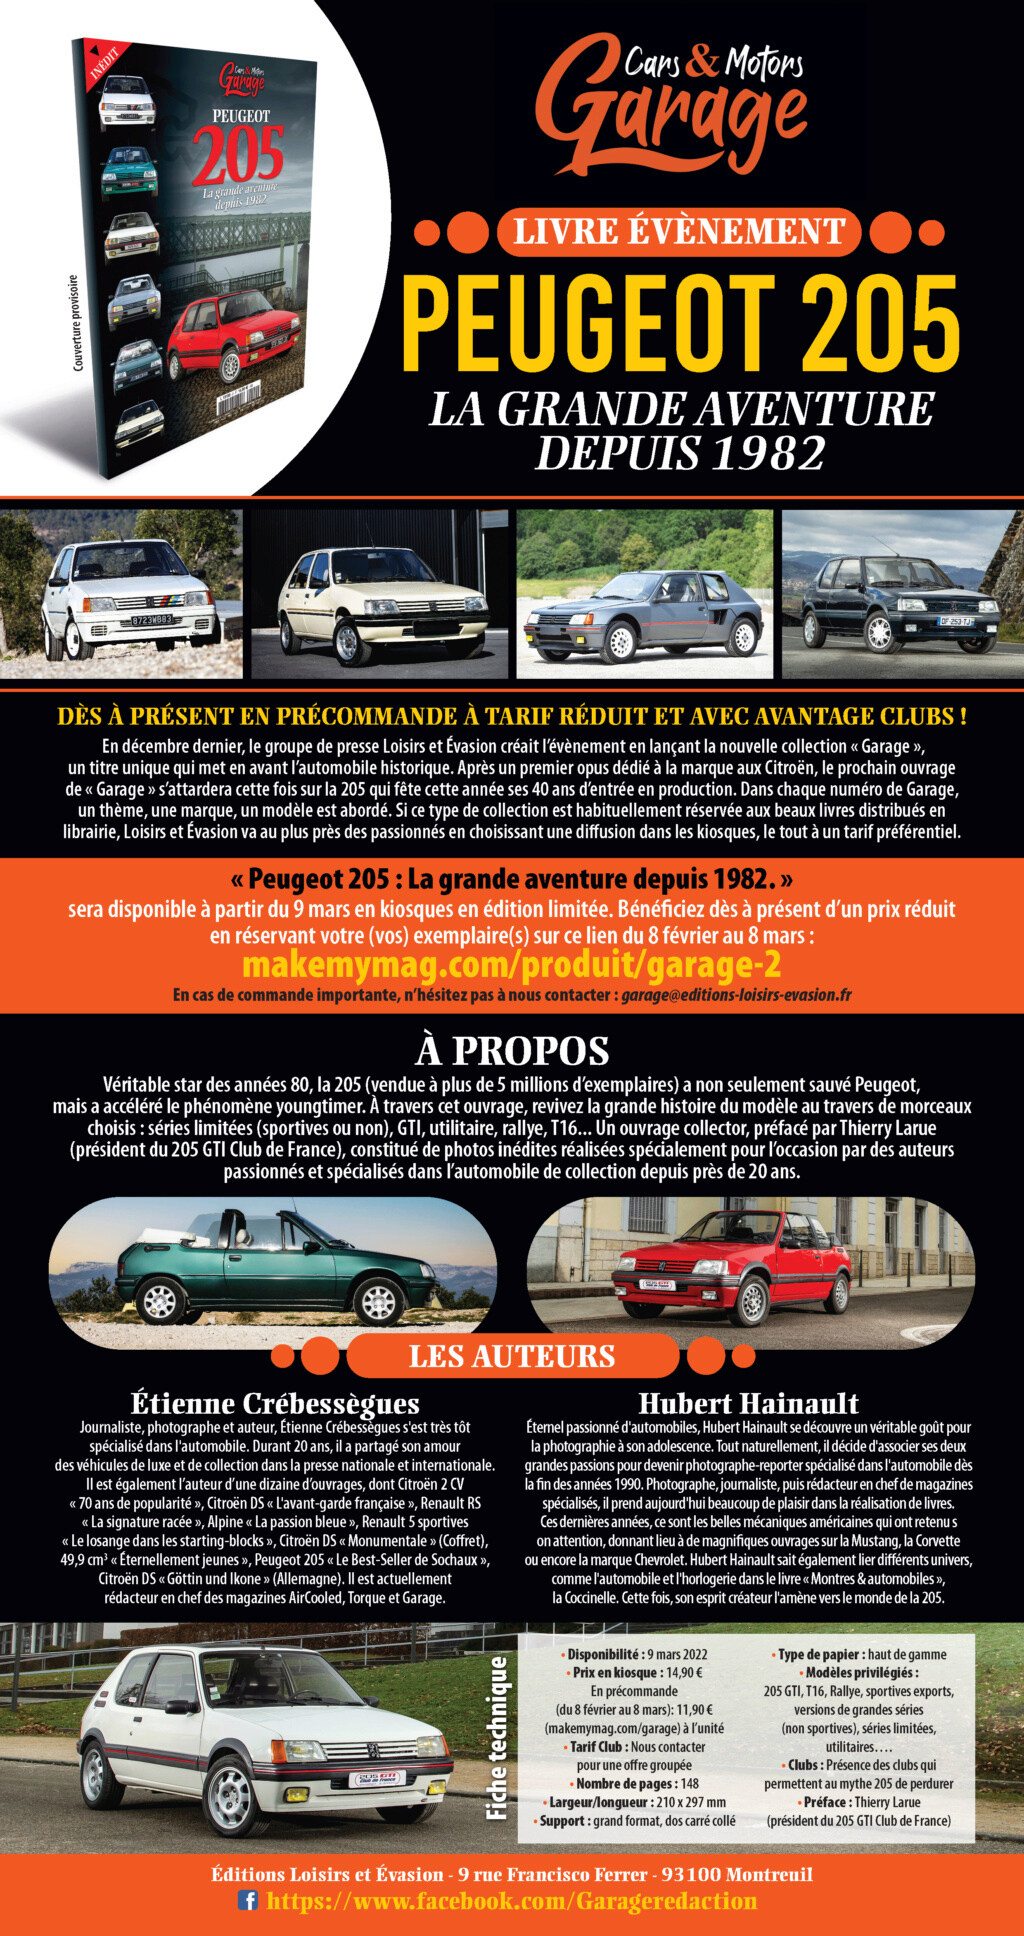 [Précommande] La Peugeot 205 dans Cars & Motors Garage  Plaque10